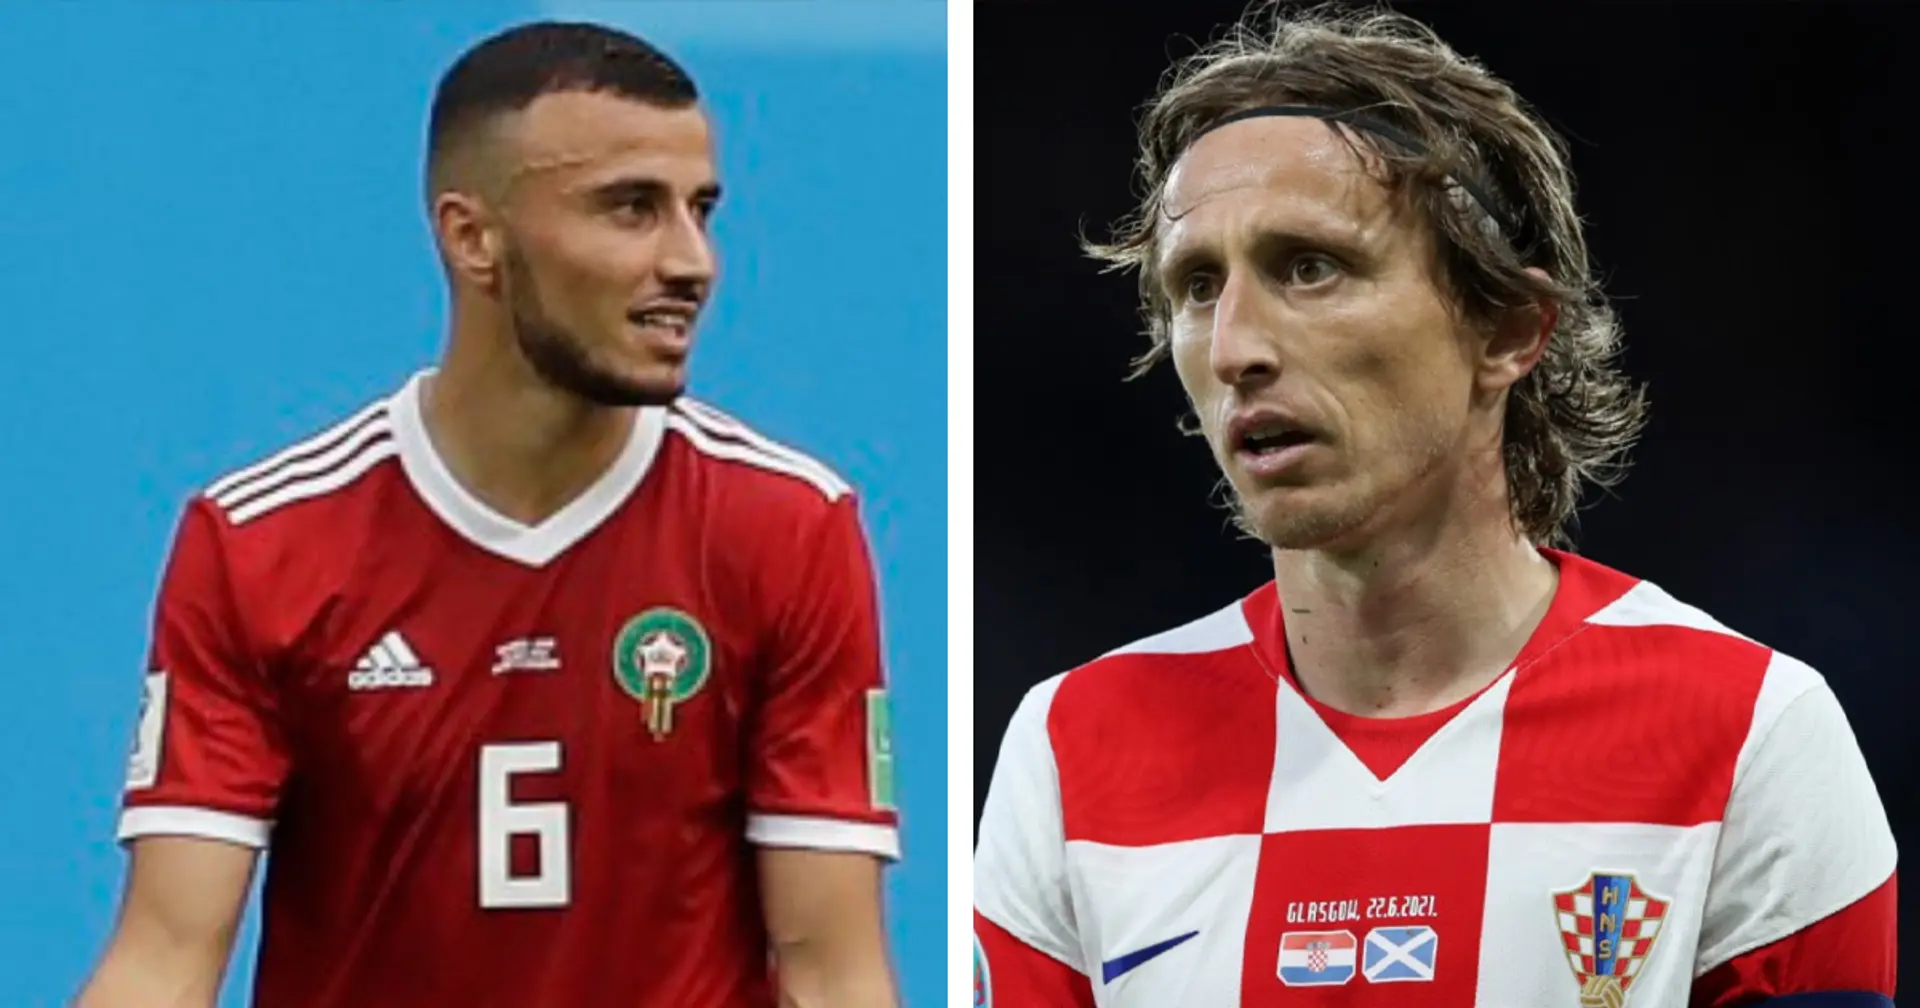 Marokko vs. Kroatien: Offizielle Aufstellungen für das WM-Spiel stehen fest!